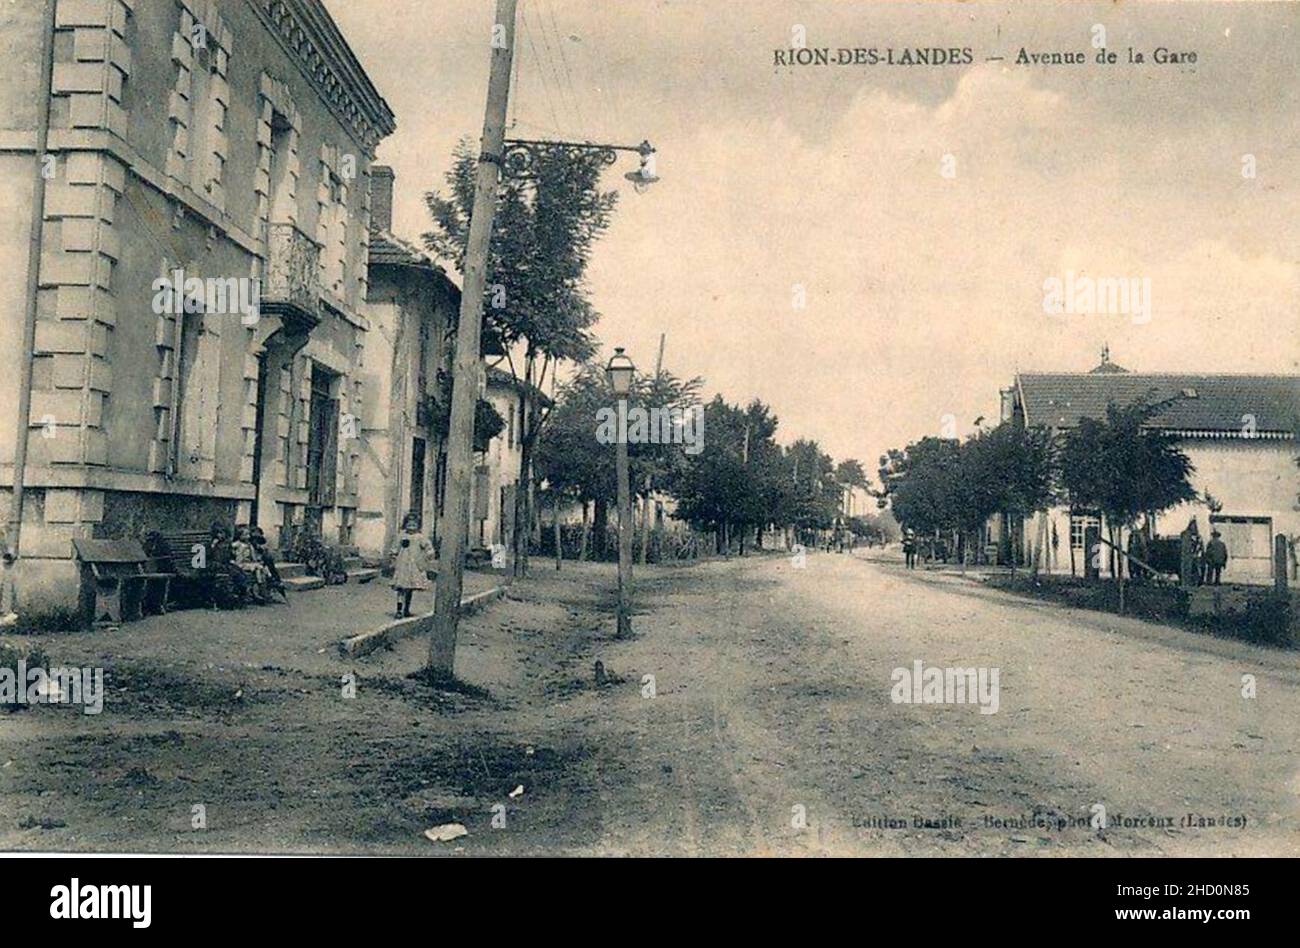 Rion-des-Landes - avenue de la gare. Stock Photo